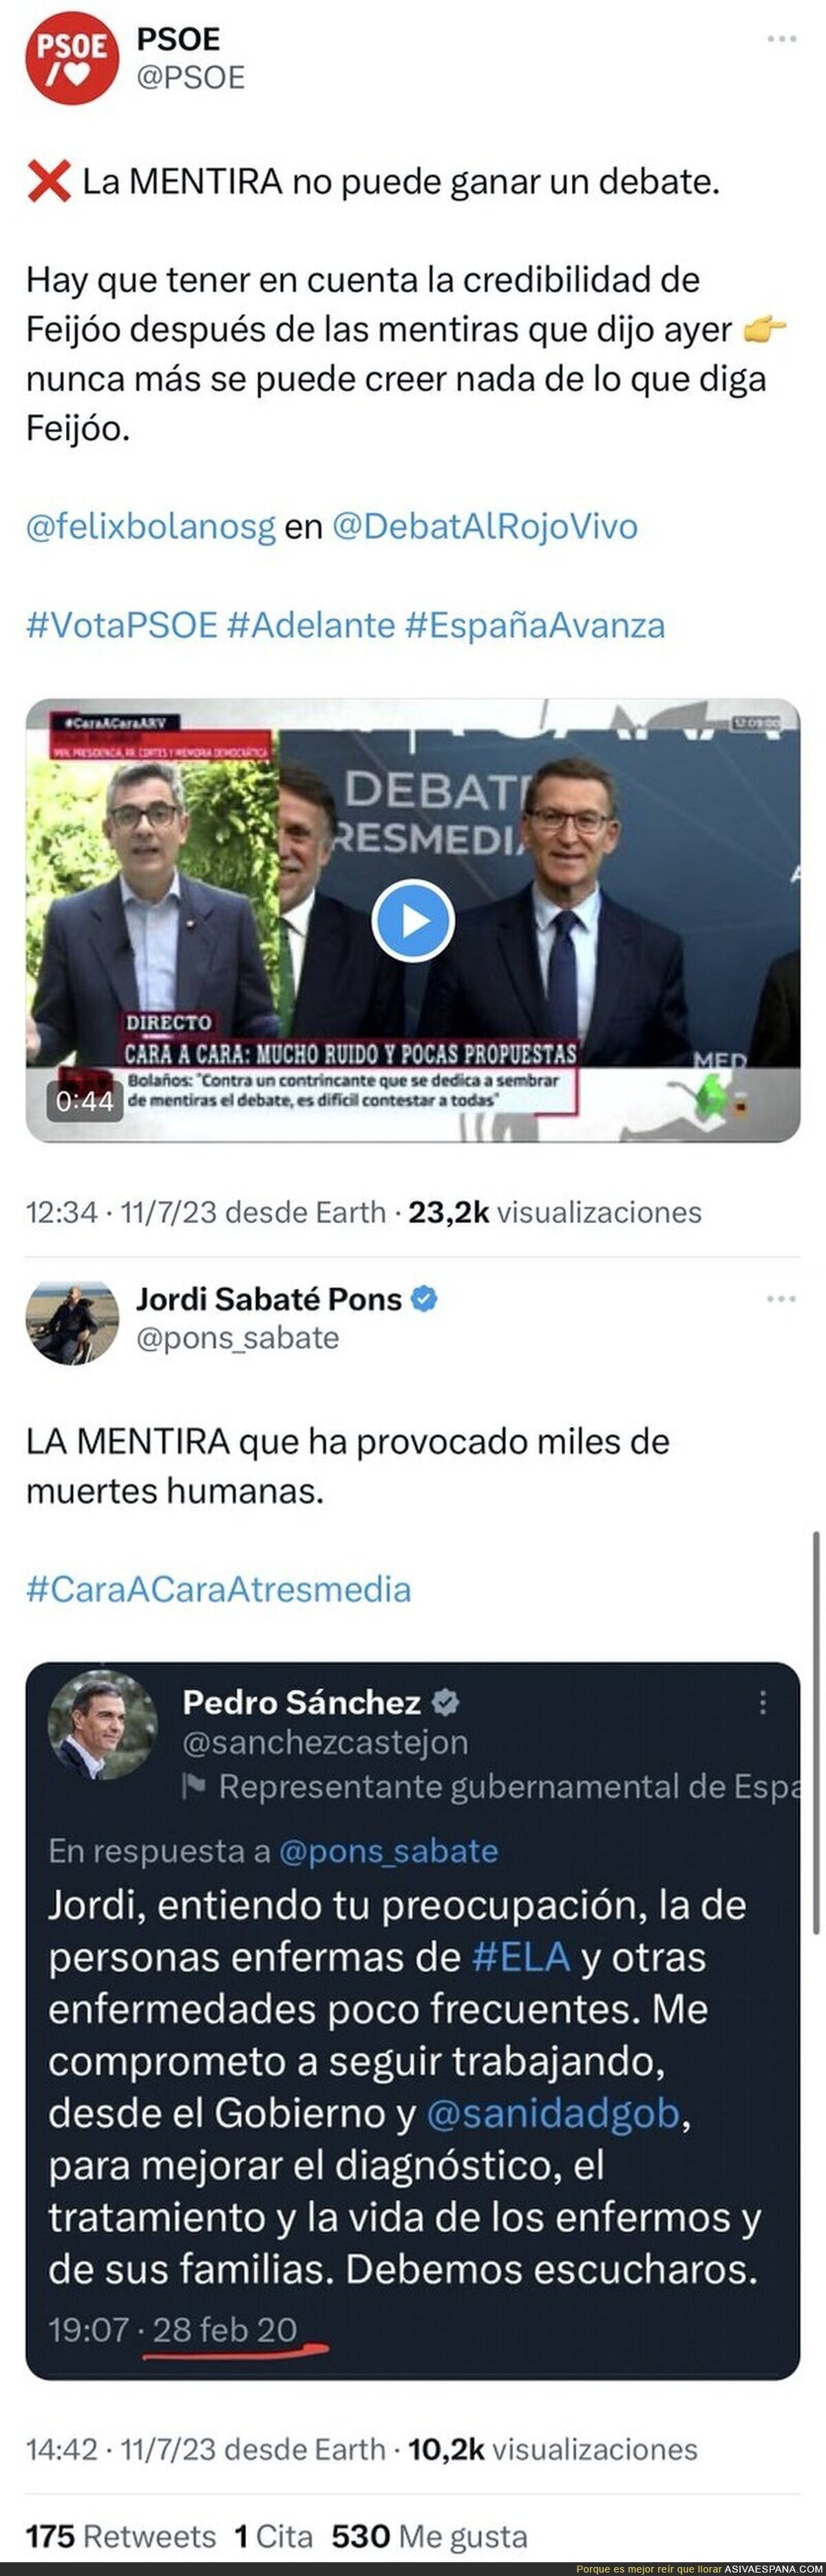 Jordi Sabaté, enfermo de ELA, retrata a Pedro Sánchez por sus mentiras